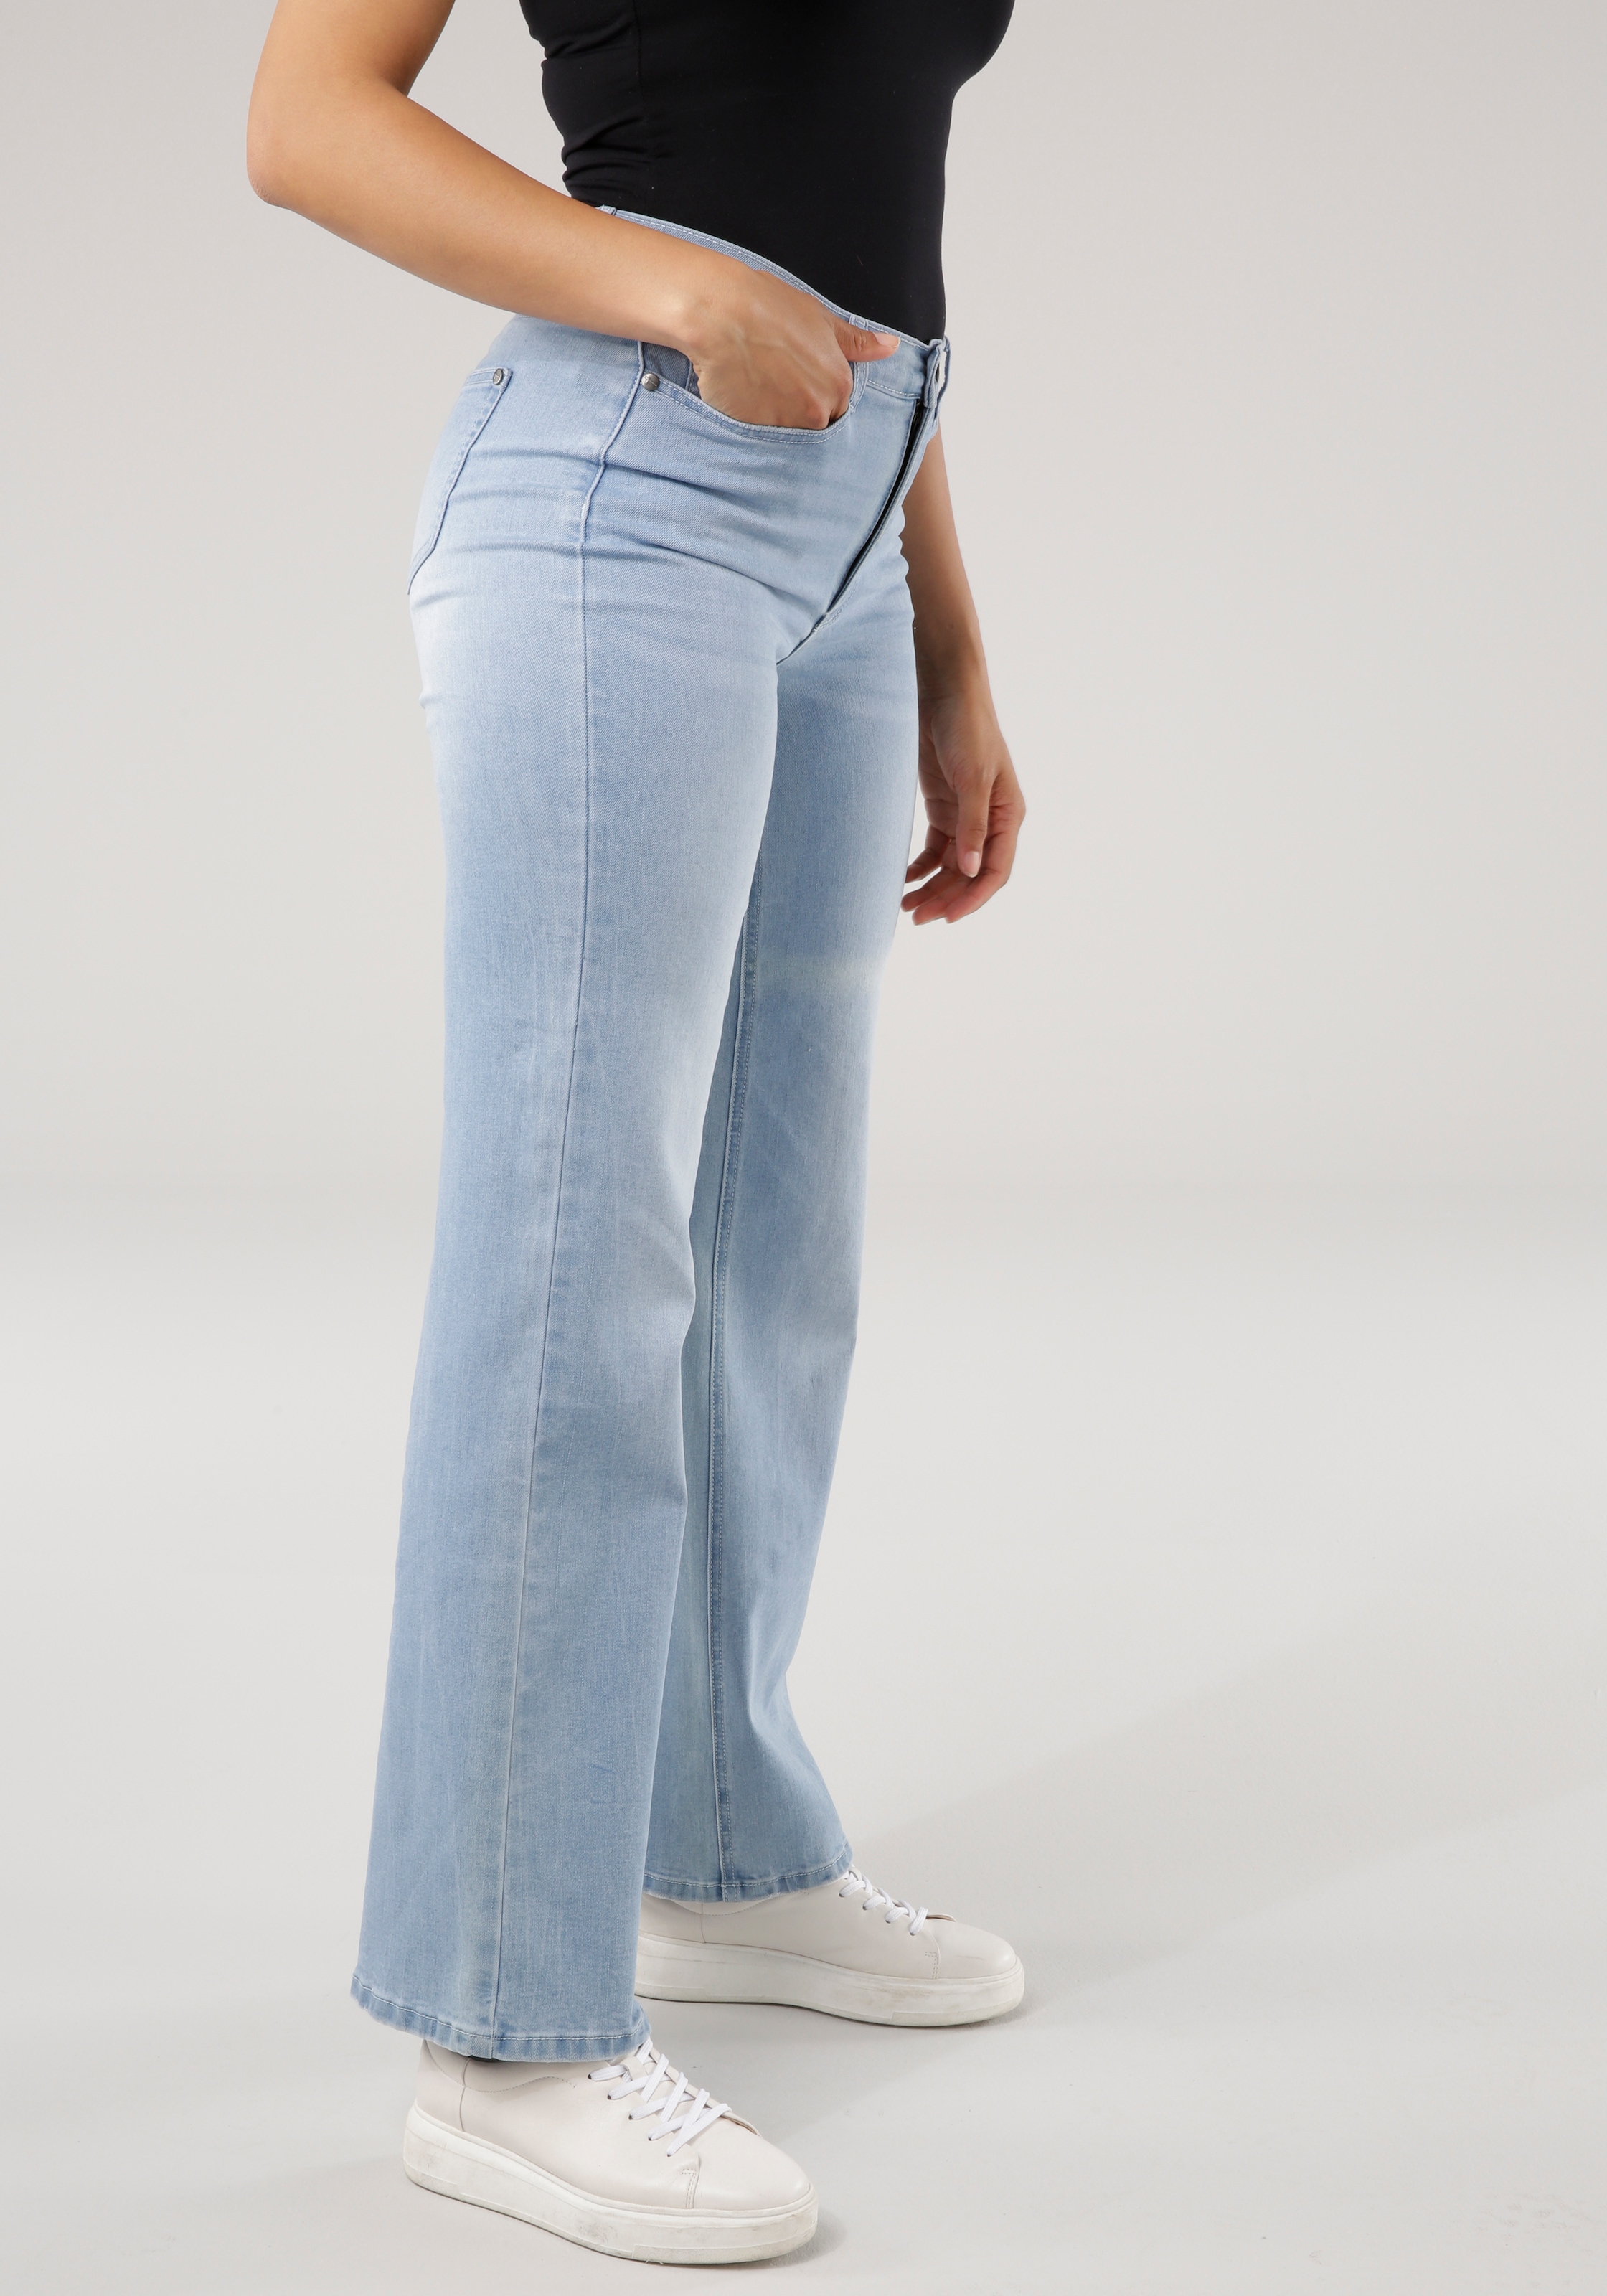 Jeans, bei Weite 5-pocket-Style Tamaris im ♕